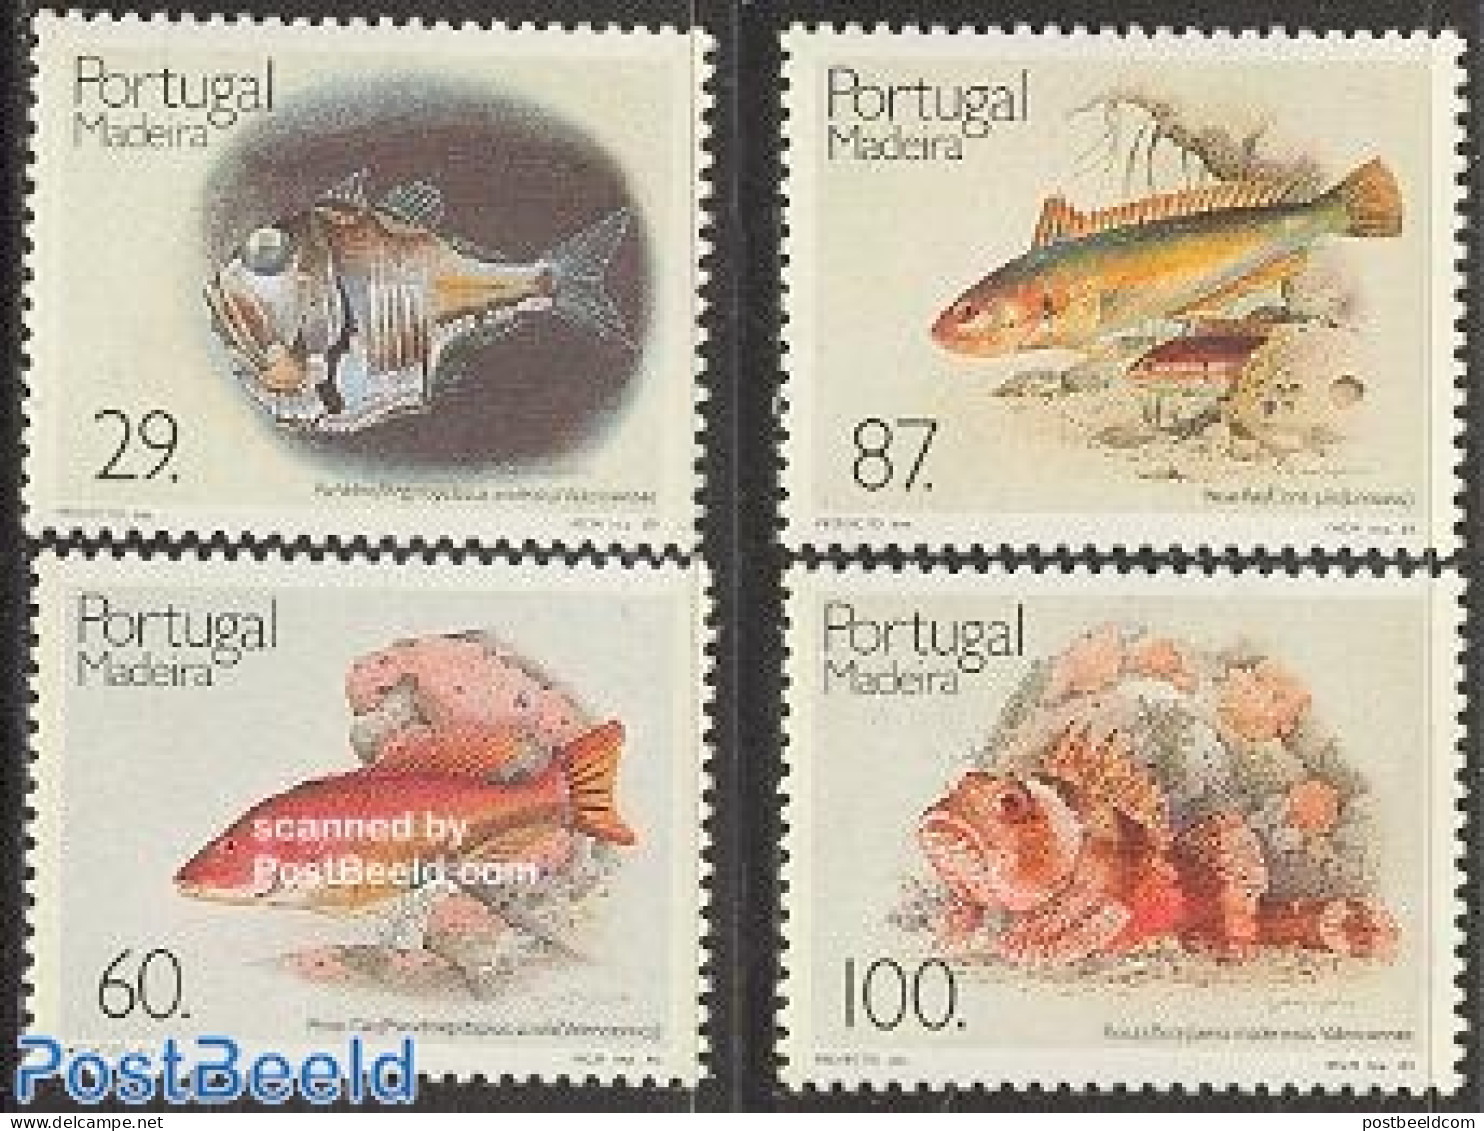 Madeira 1989 Fish 4v, Mint NH, Nature - Fish - Fishes